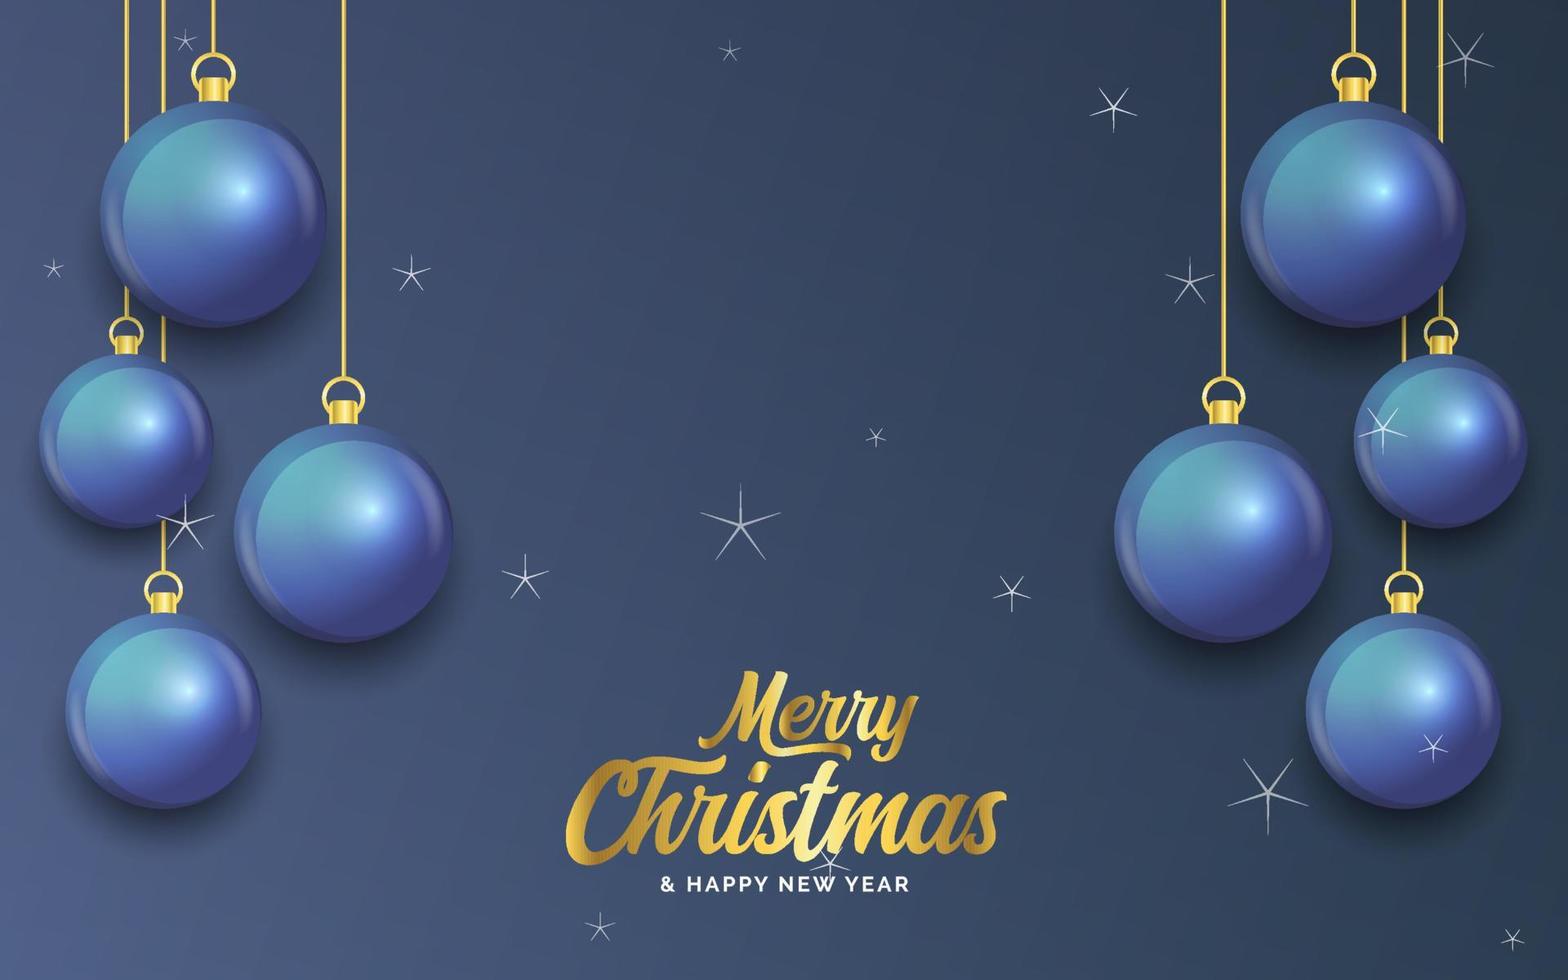 feliz navidad banner azul oscuro con bolas. tarjeta de Navidad vector